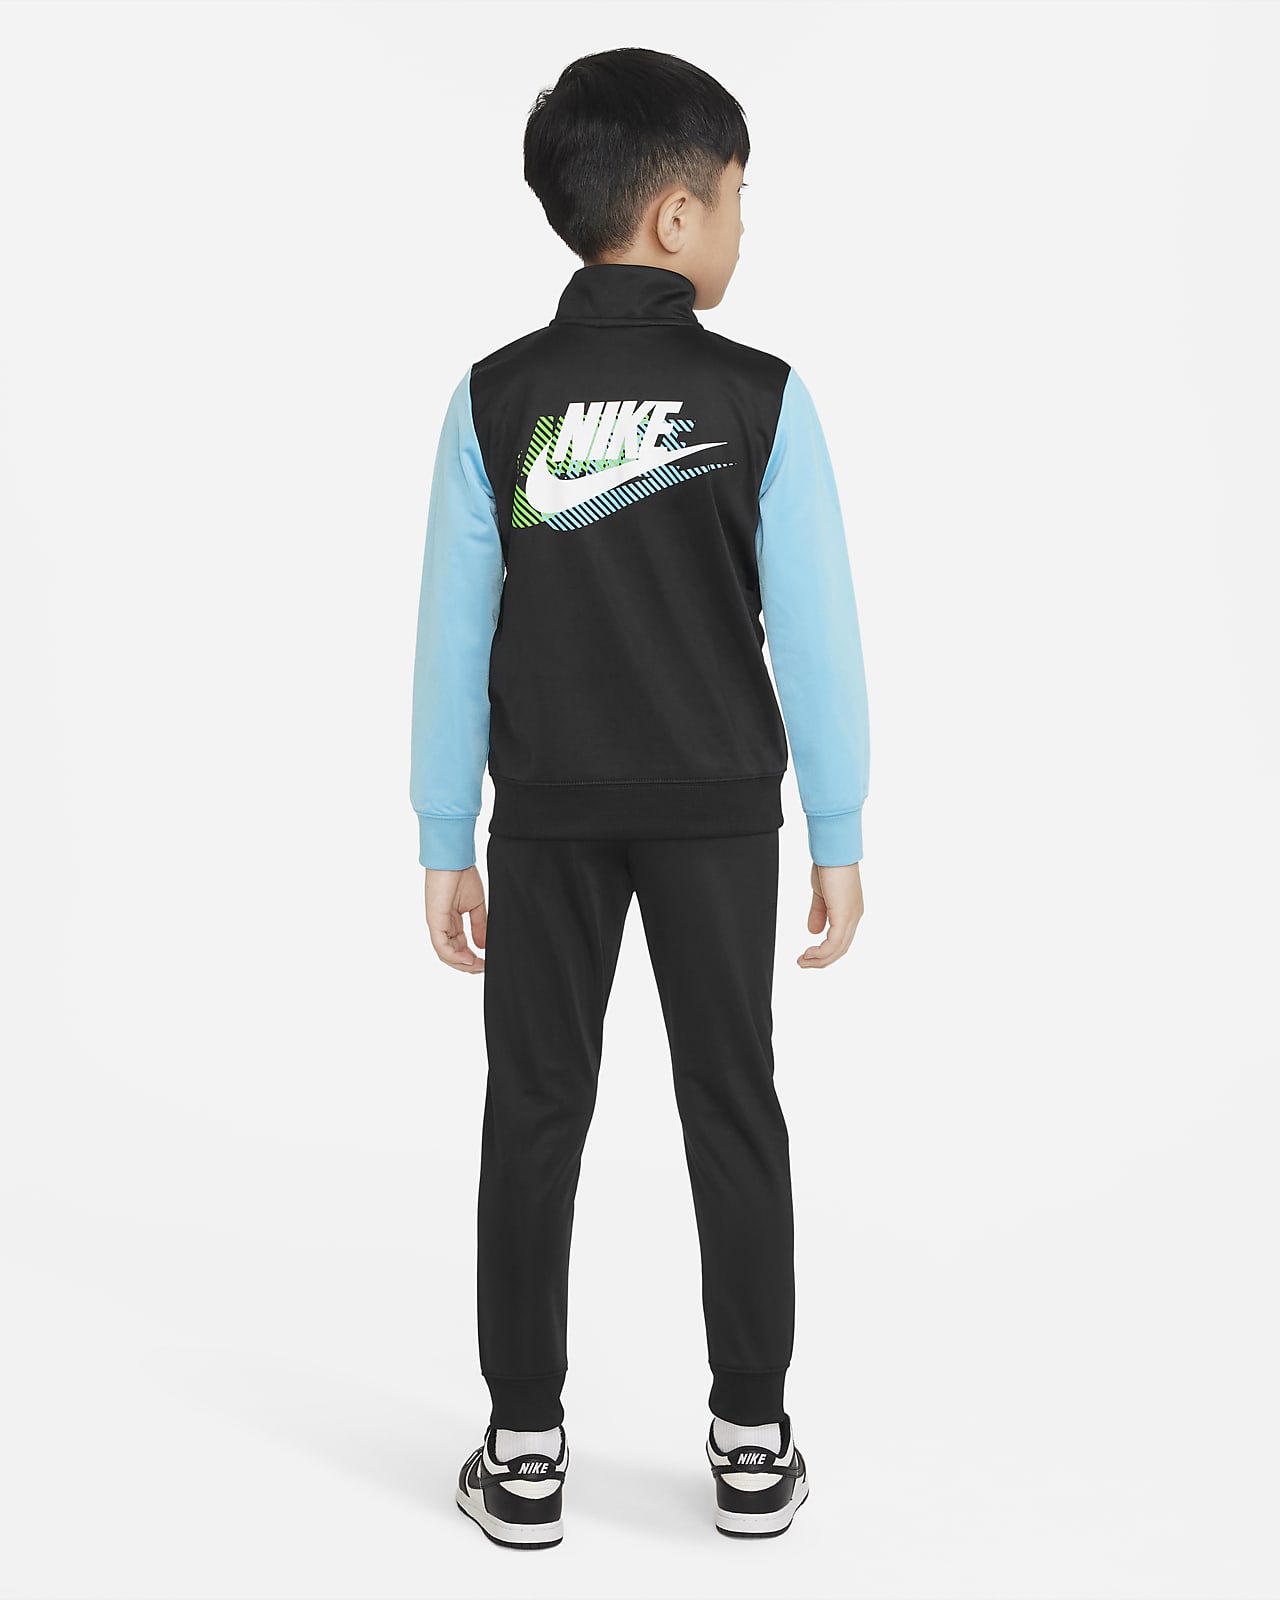 Survêtement tricoté bébé garçon Nike